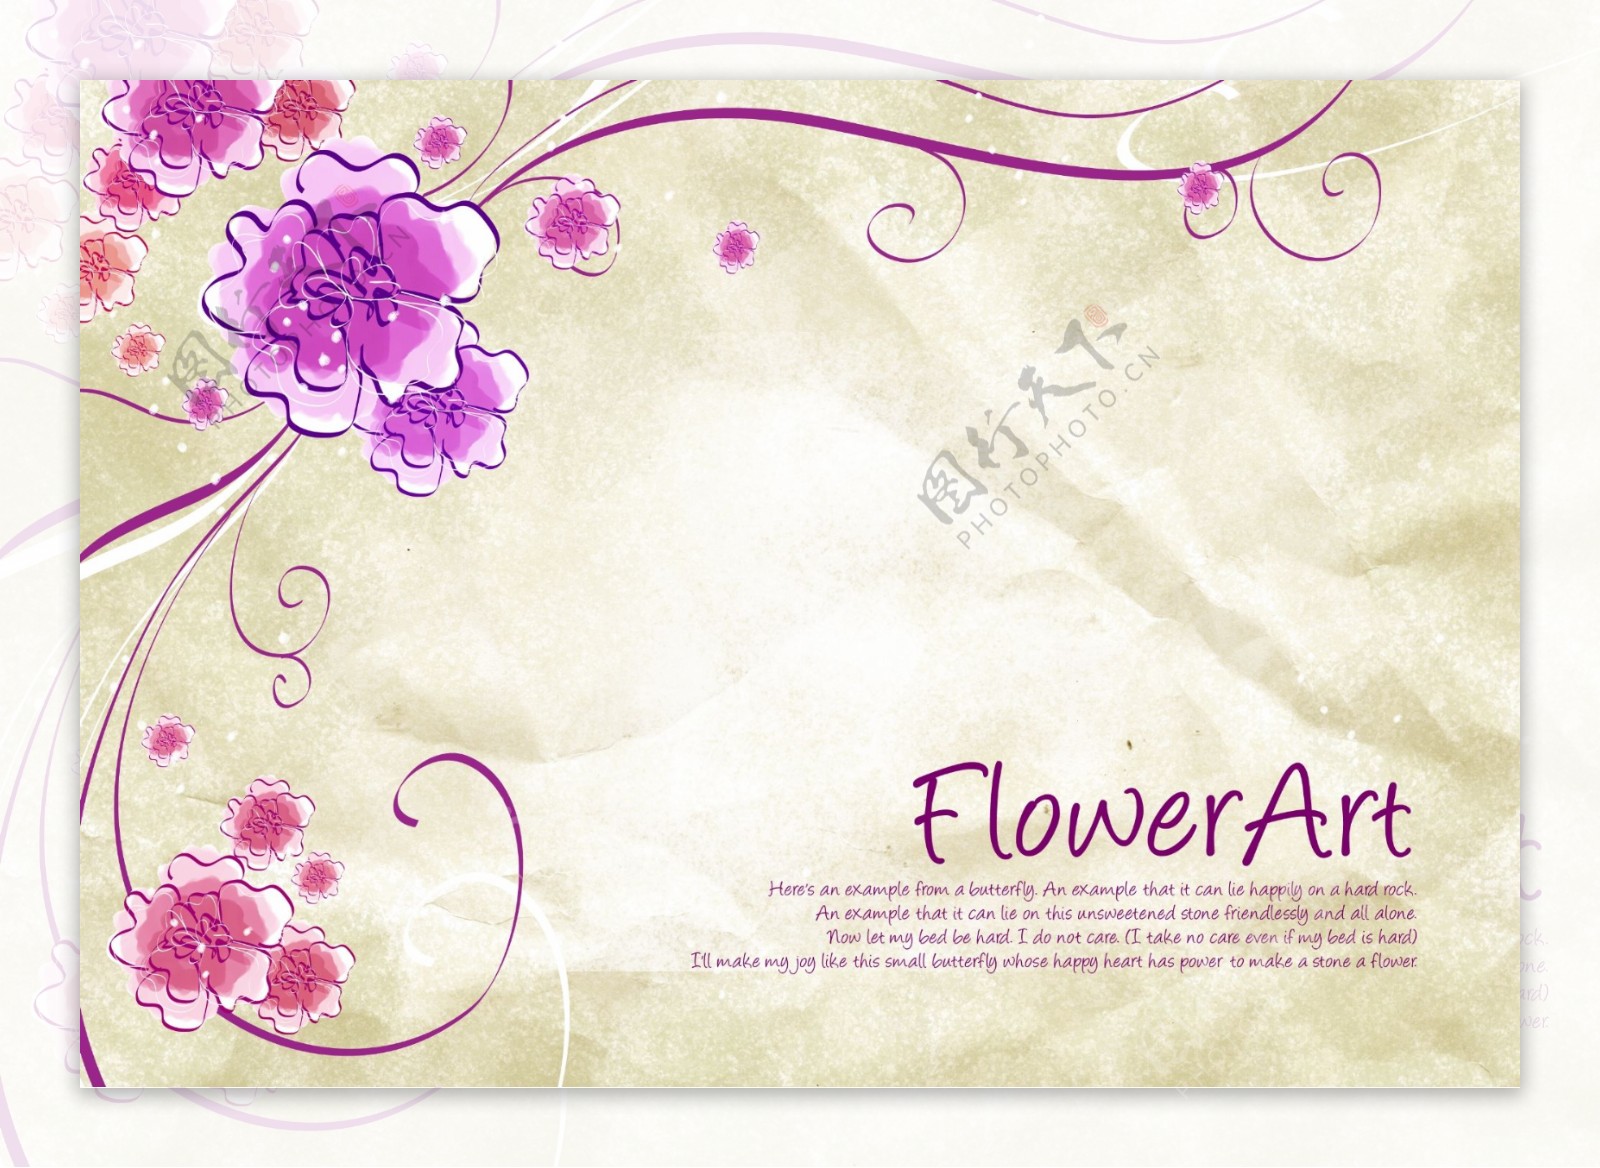 花朵纹理背景素材PSD文件